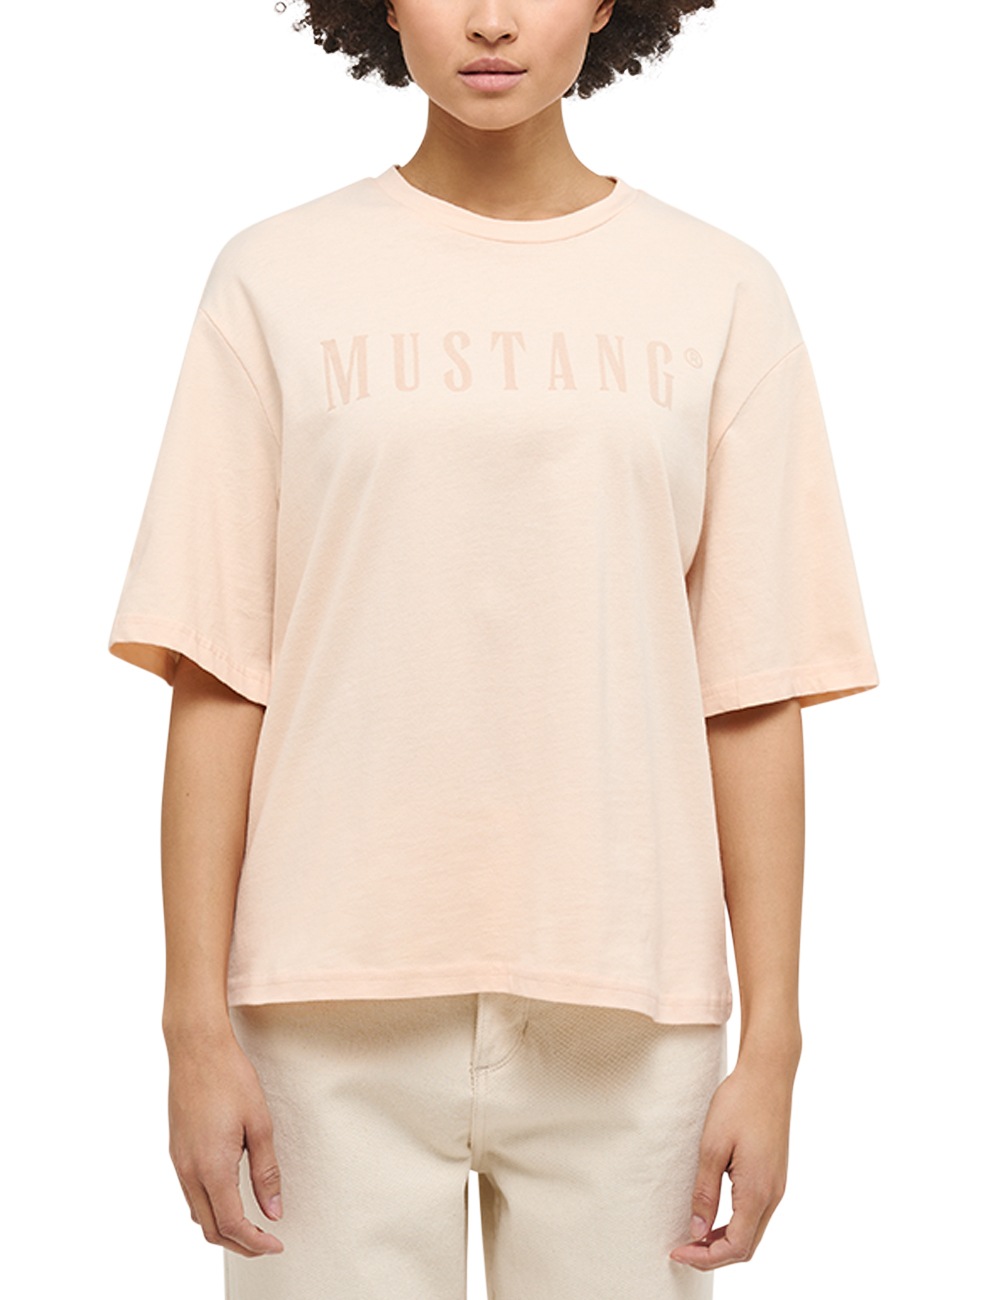 MUSTANG Kurzarmshirt »Mustang walking | T-Shirt« bestellen I\'m